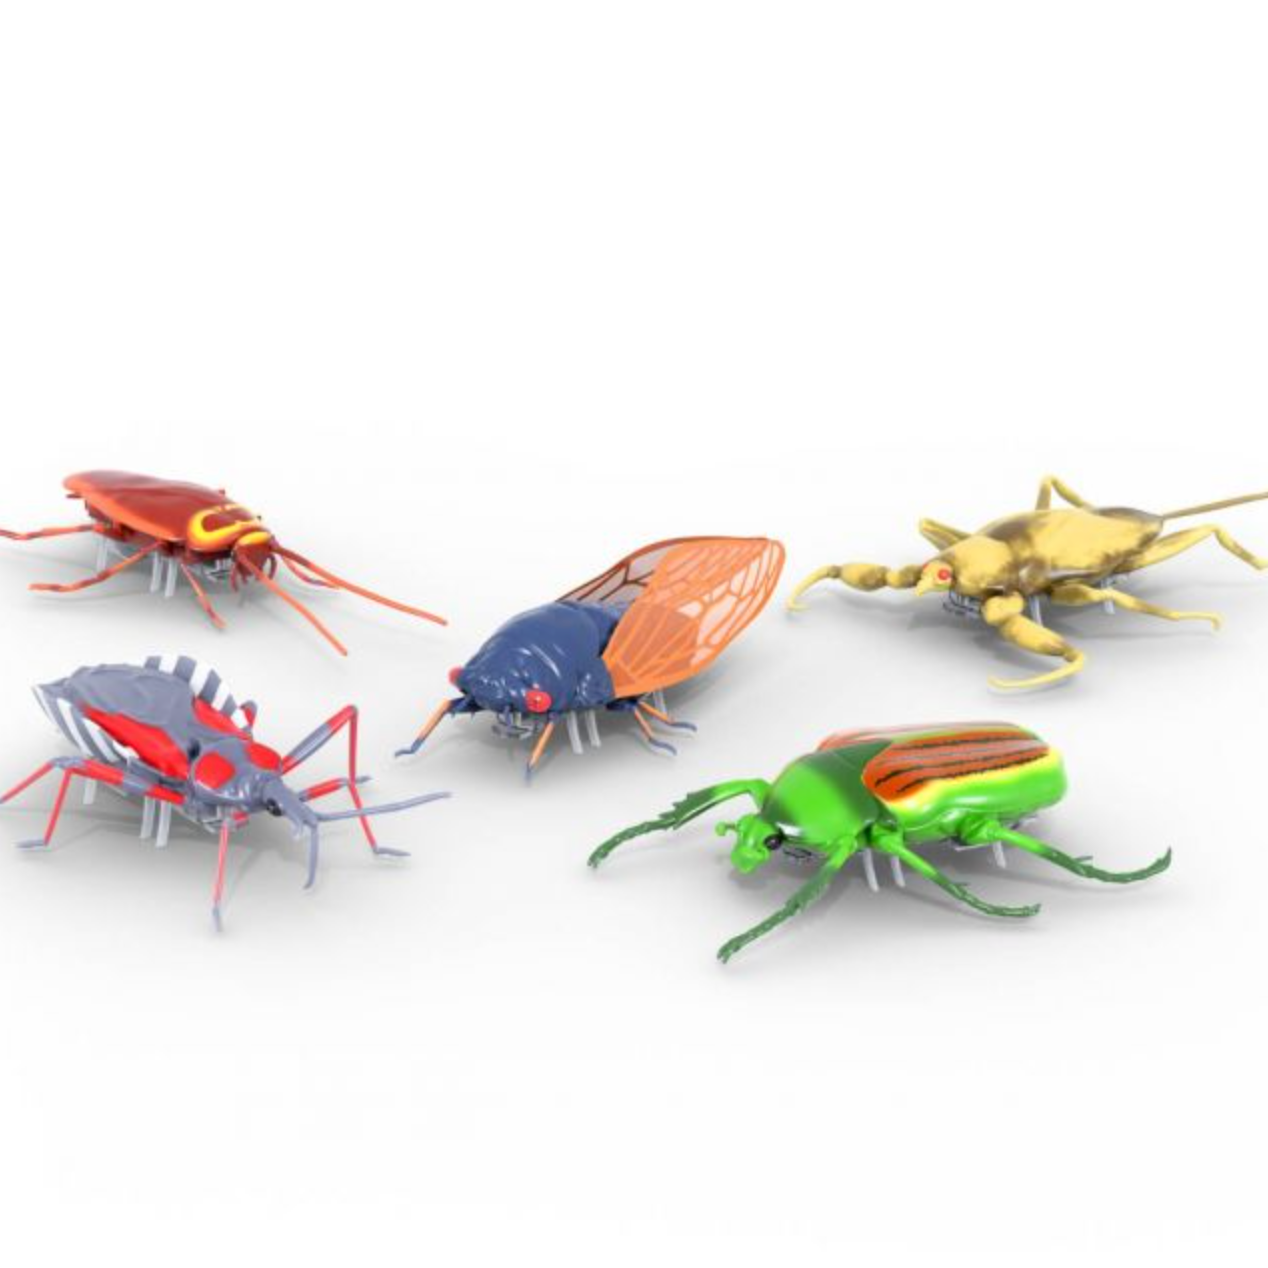 Hexbug - Real Bugs Nano 5pk